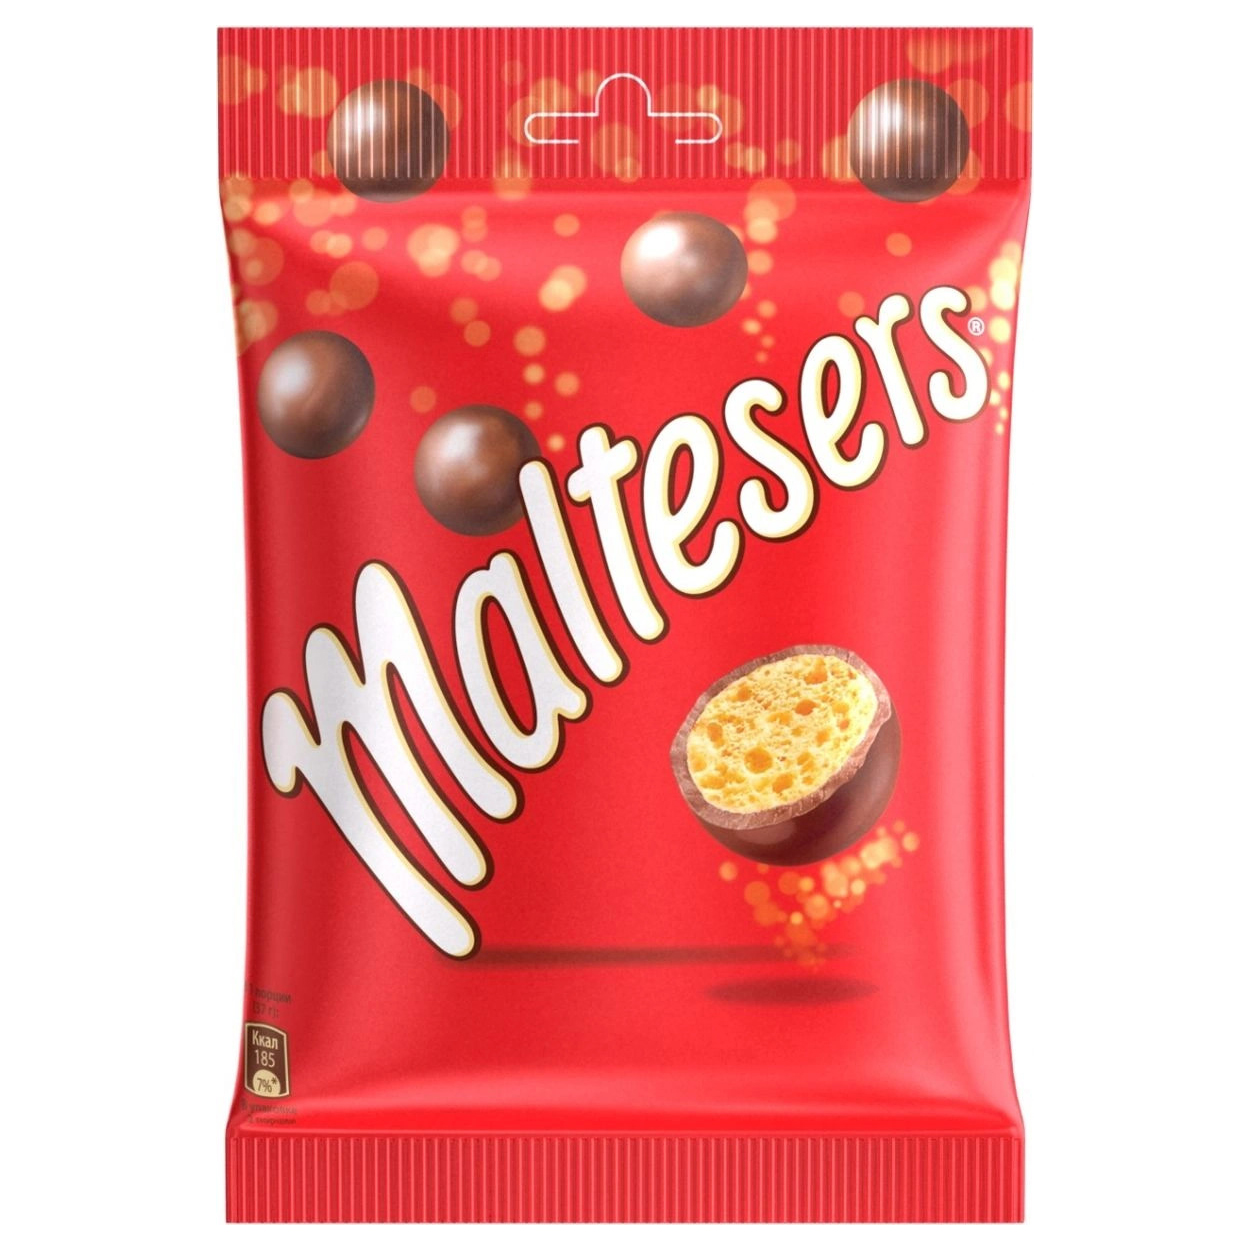 Конфеты шоколадные шарики Мальтизерс. Конфеты Maltesers шоколадные шарики. Шоколадное драже Мальтизерс. Конфеты драже Maltesers.